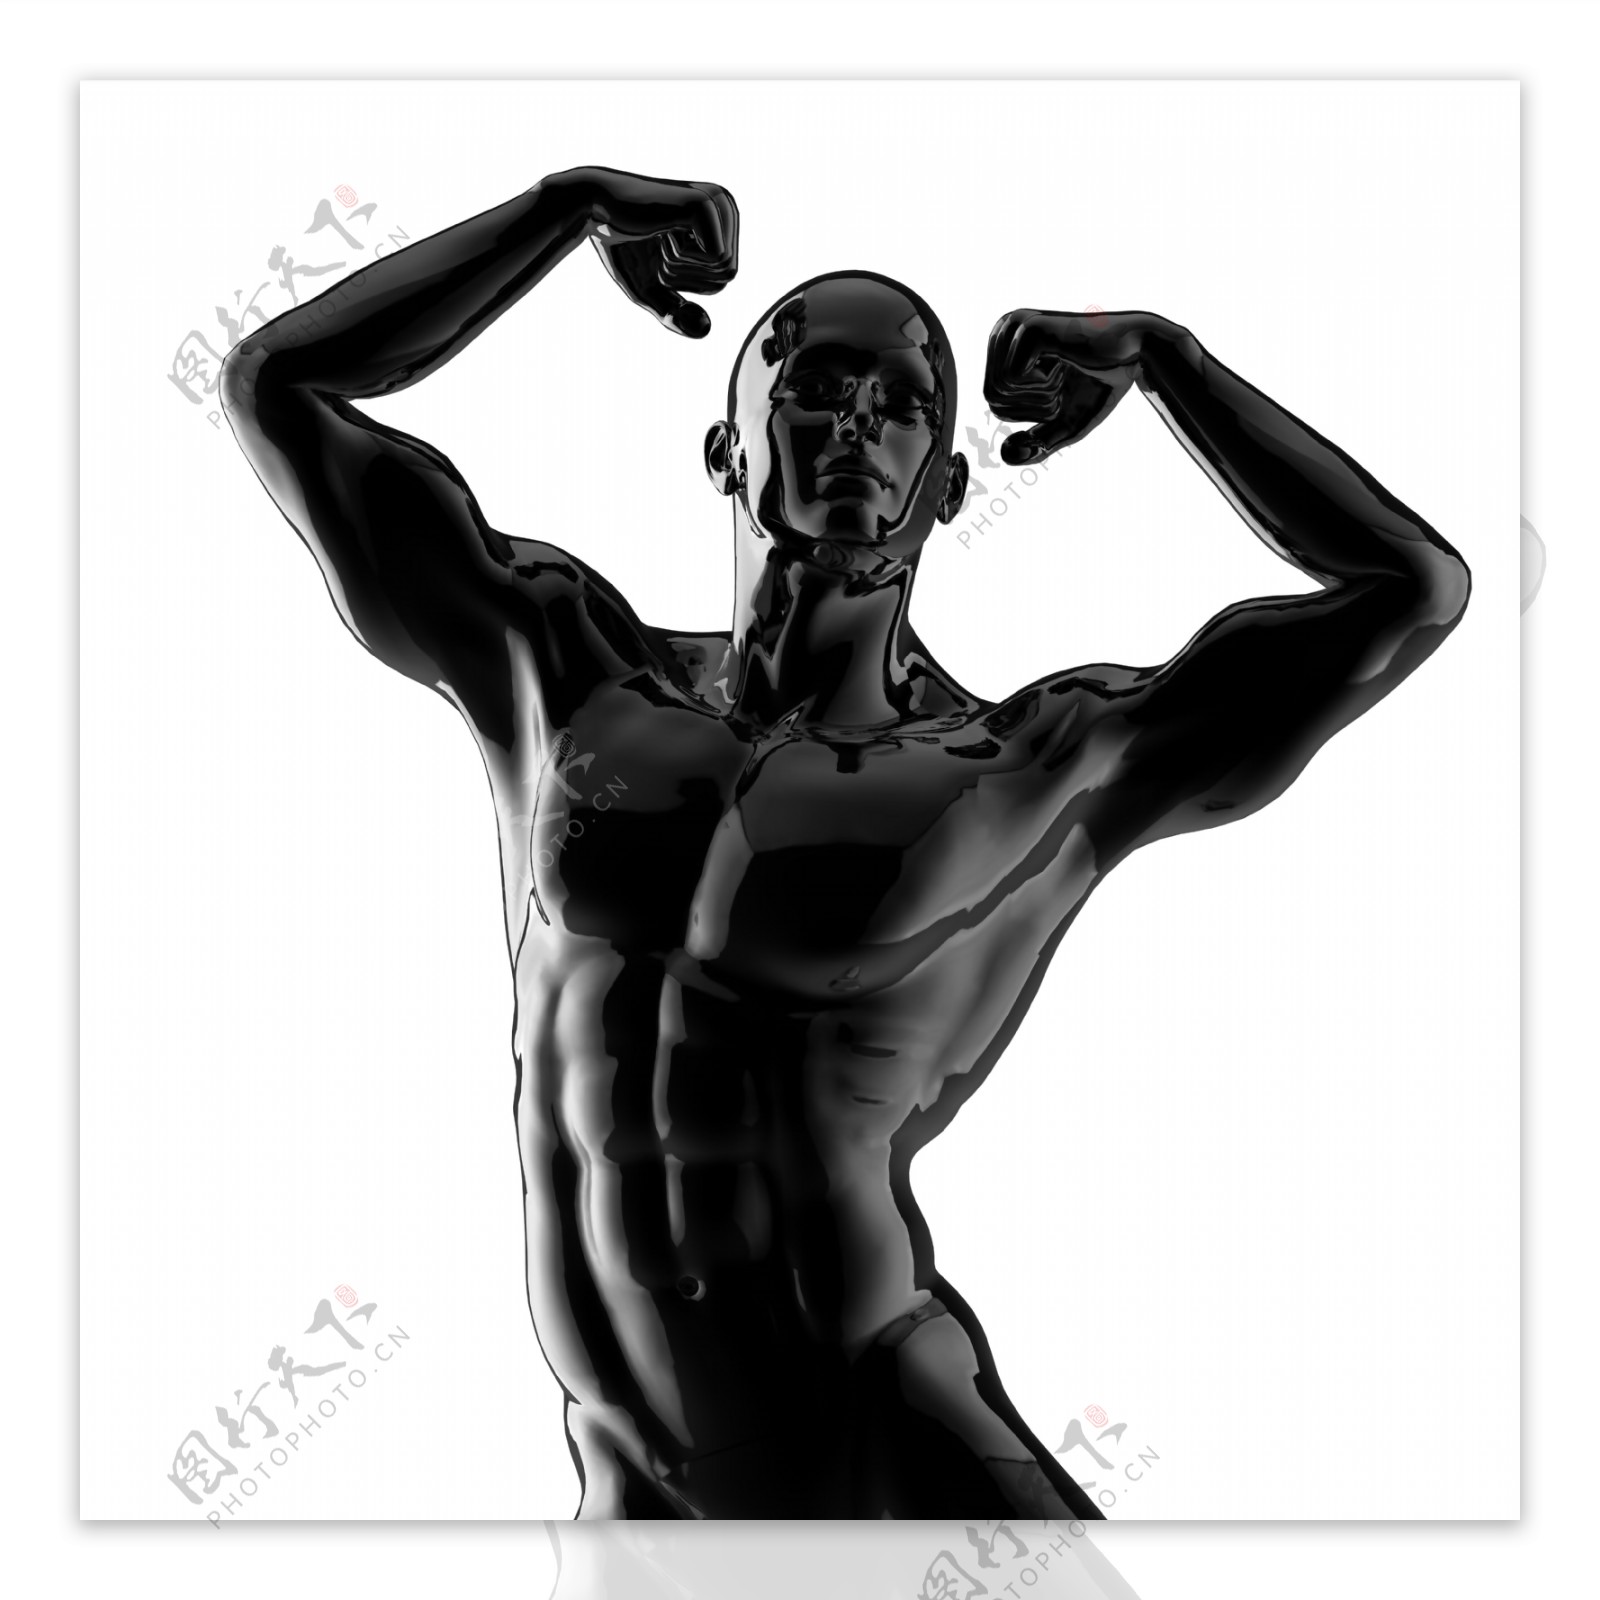 展示肌肉的塑料模型男人图片